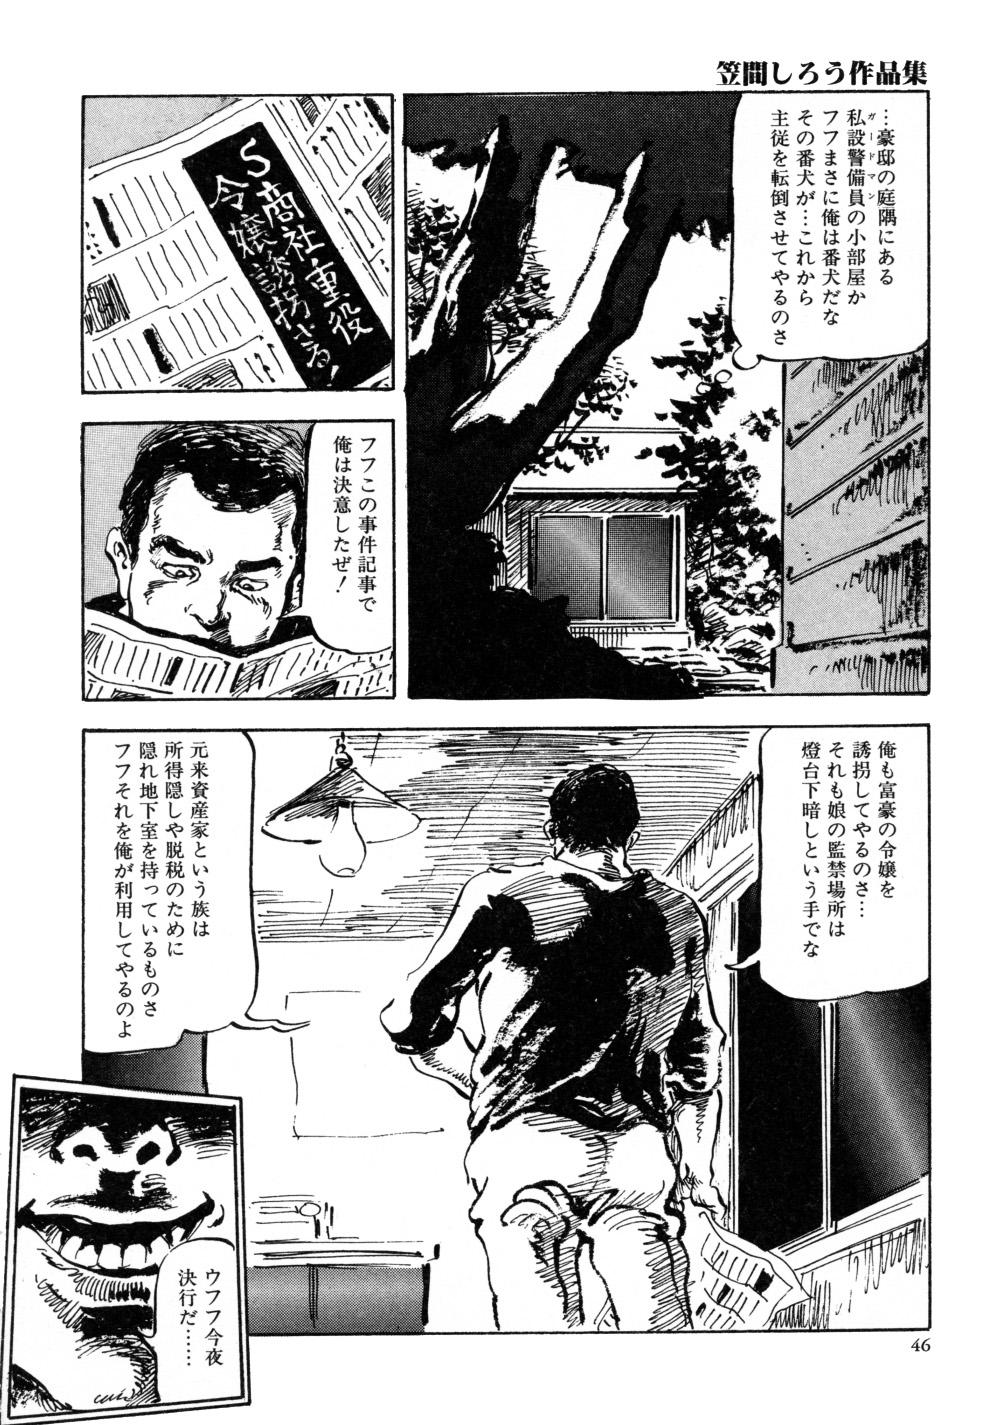 Kasama Shirou Sakuhin Vol. 3 Chijyoku no Kokuin 53